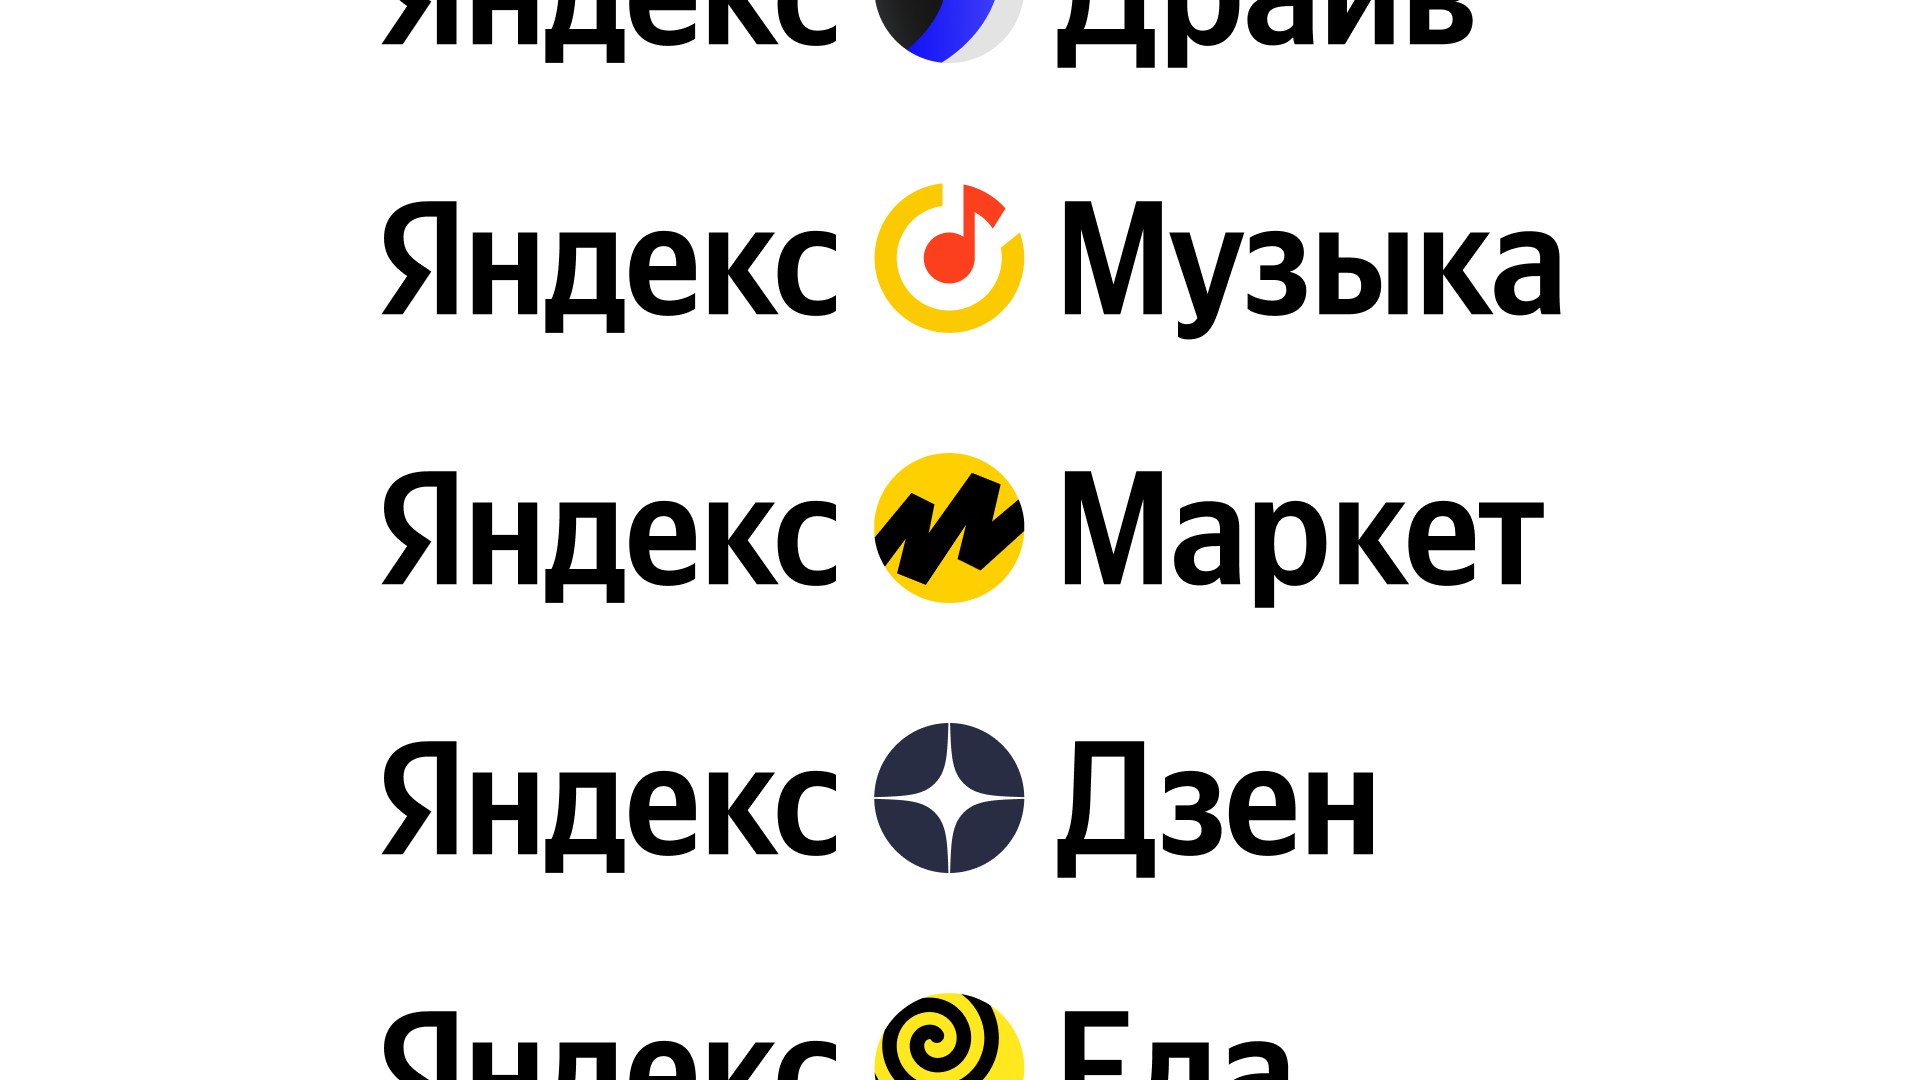 Яндекс Музыка: Новые возможности и обновленный дизайн — Дизайн на kormstroytorg.ru